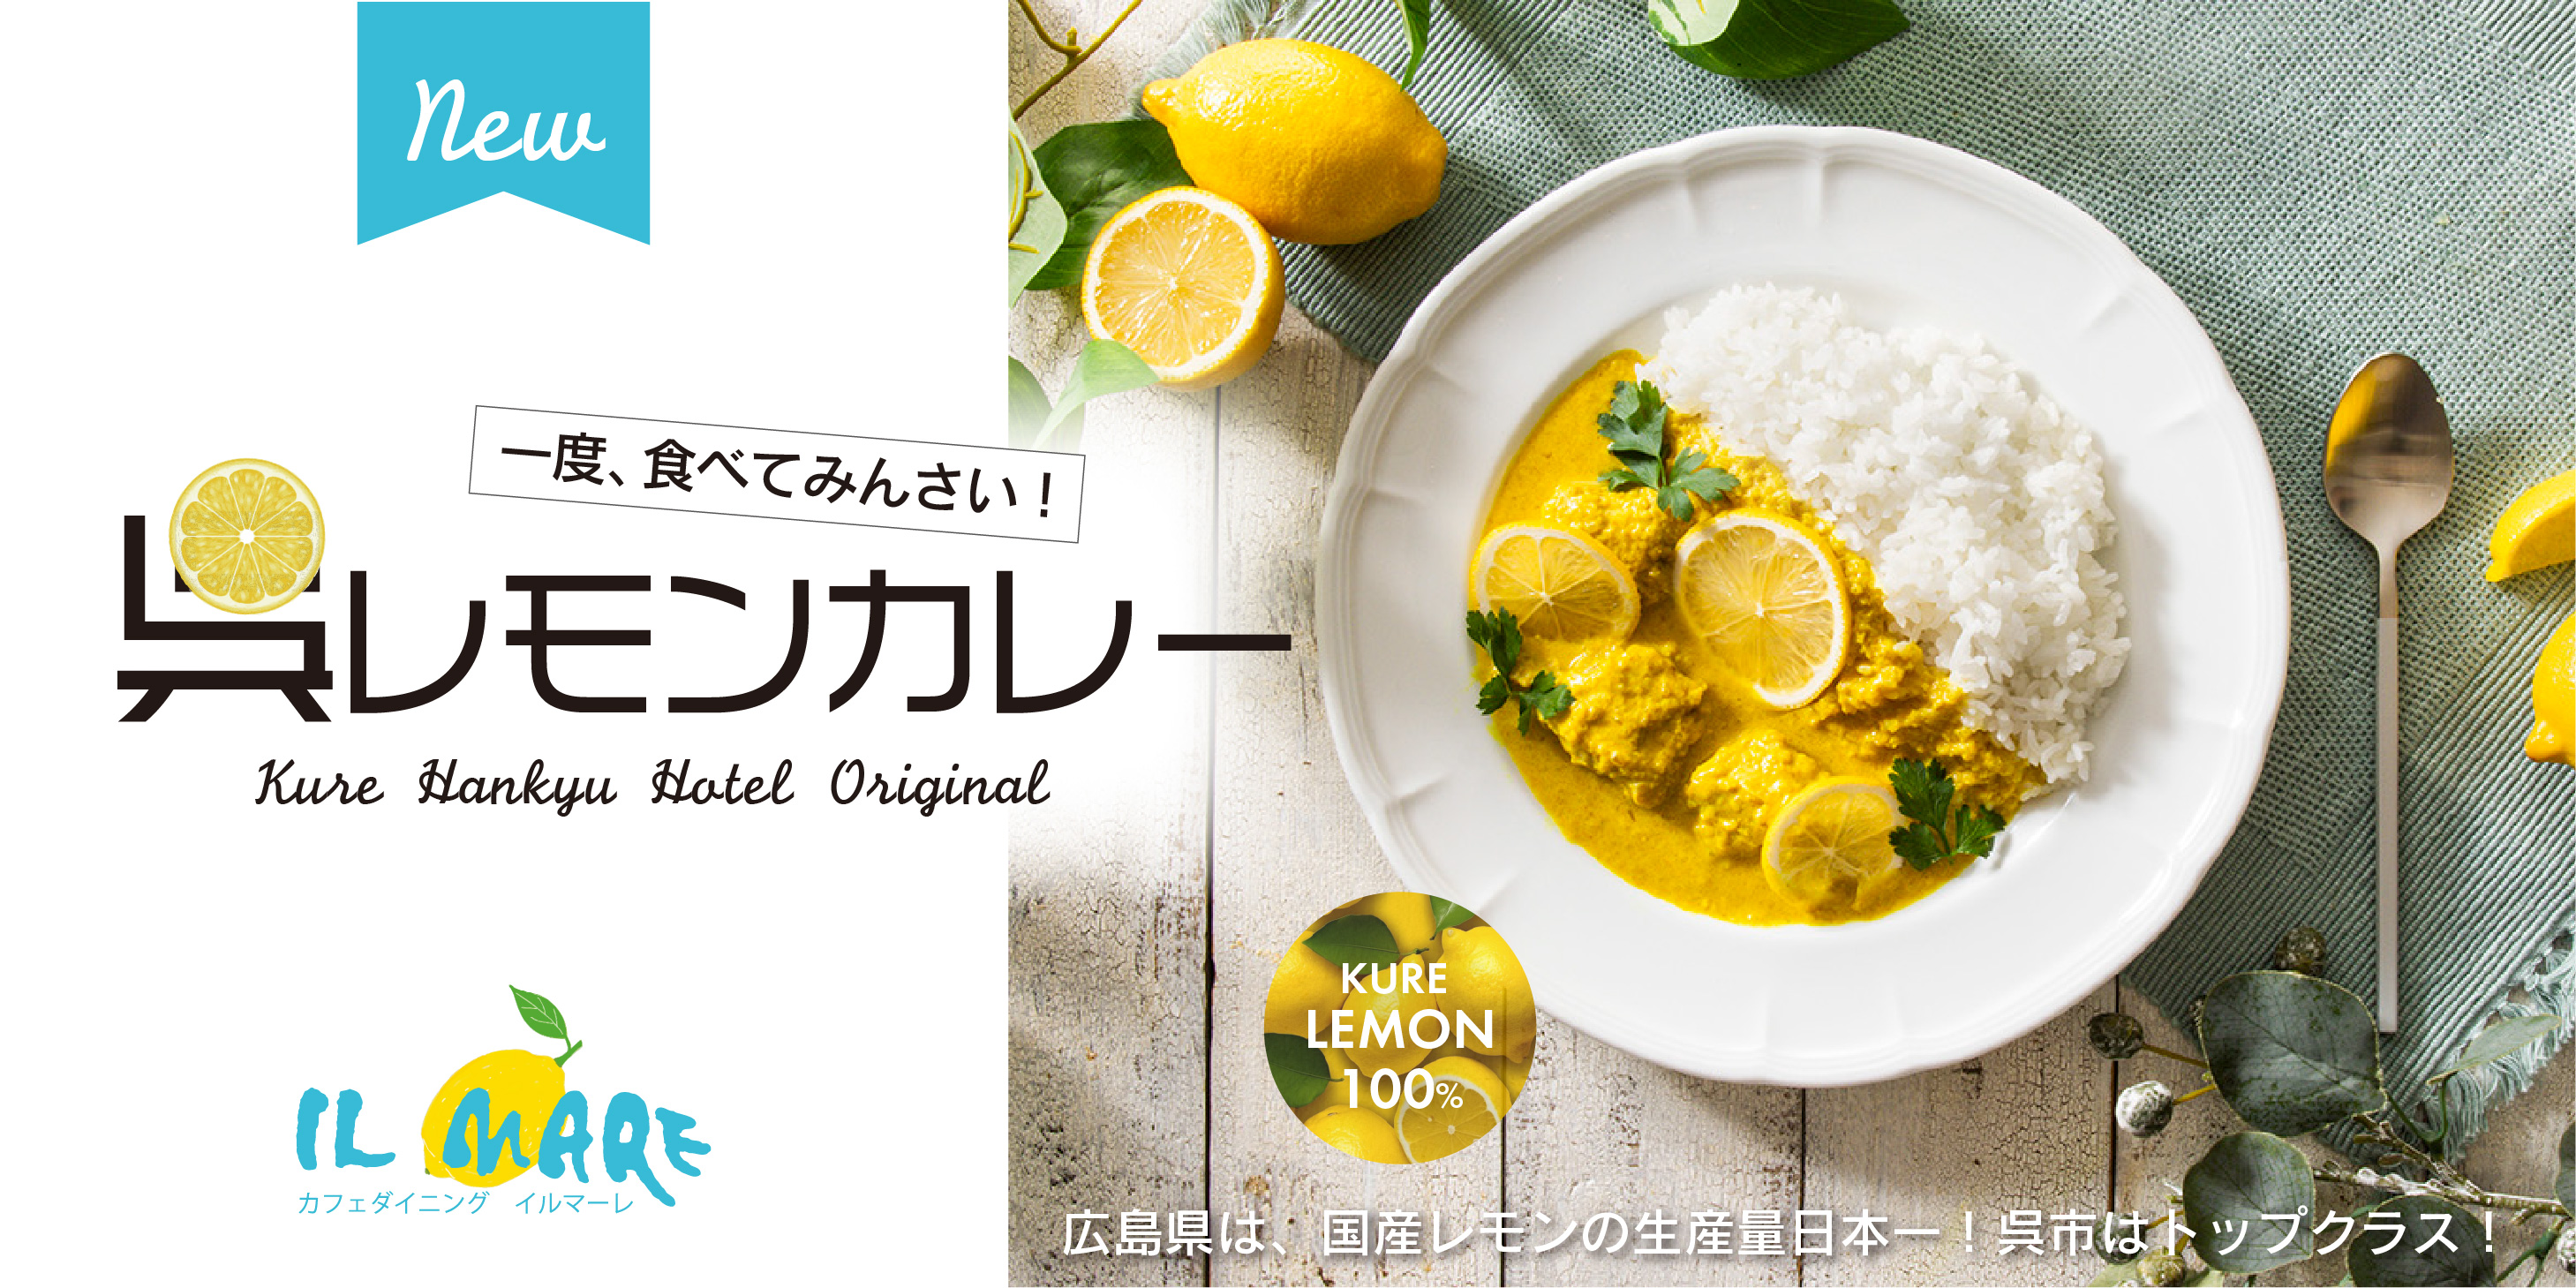 呉レモン100%のホテルオリジナルレモンカレー。広島県は、国産レモンの生産量日本一！呉市はトップクラス！